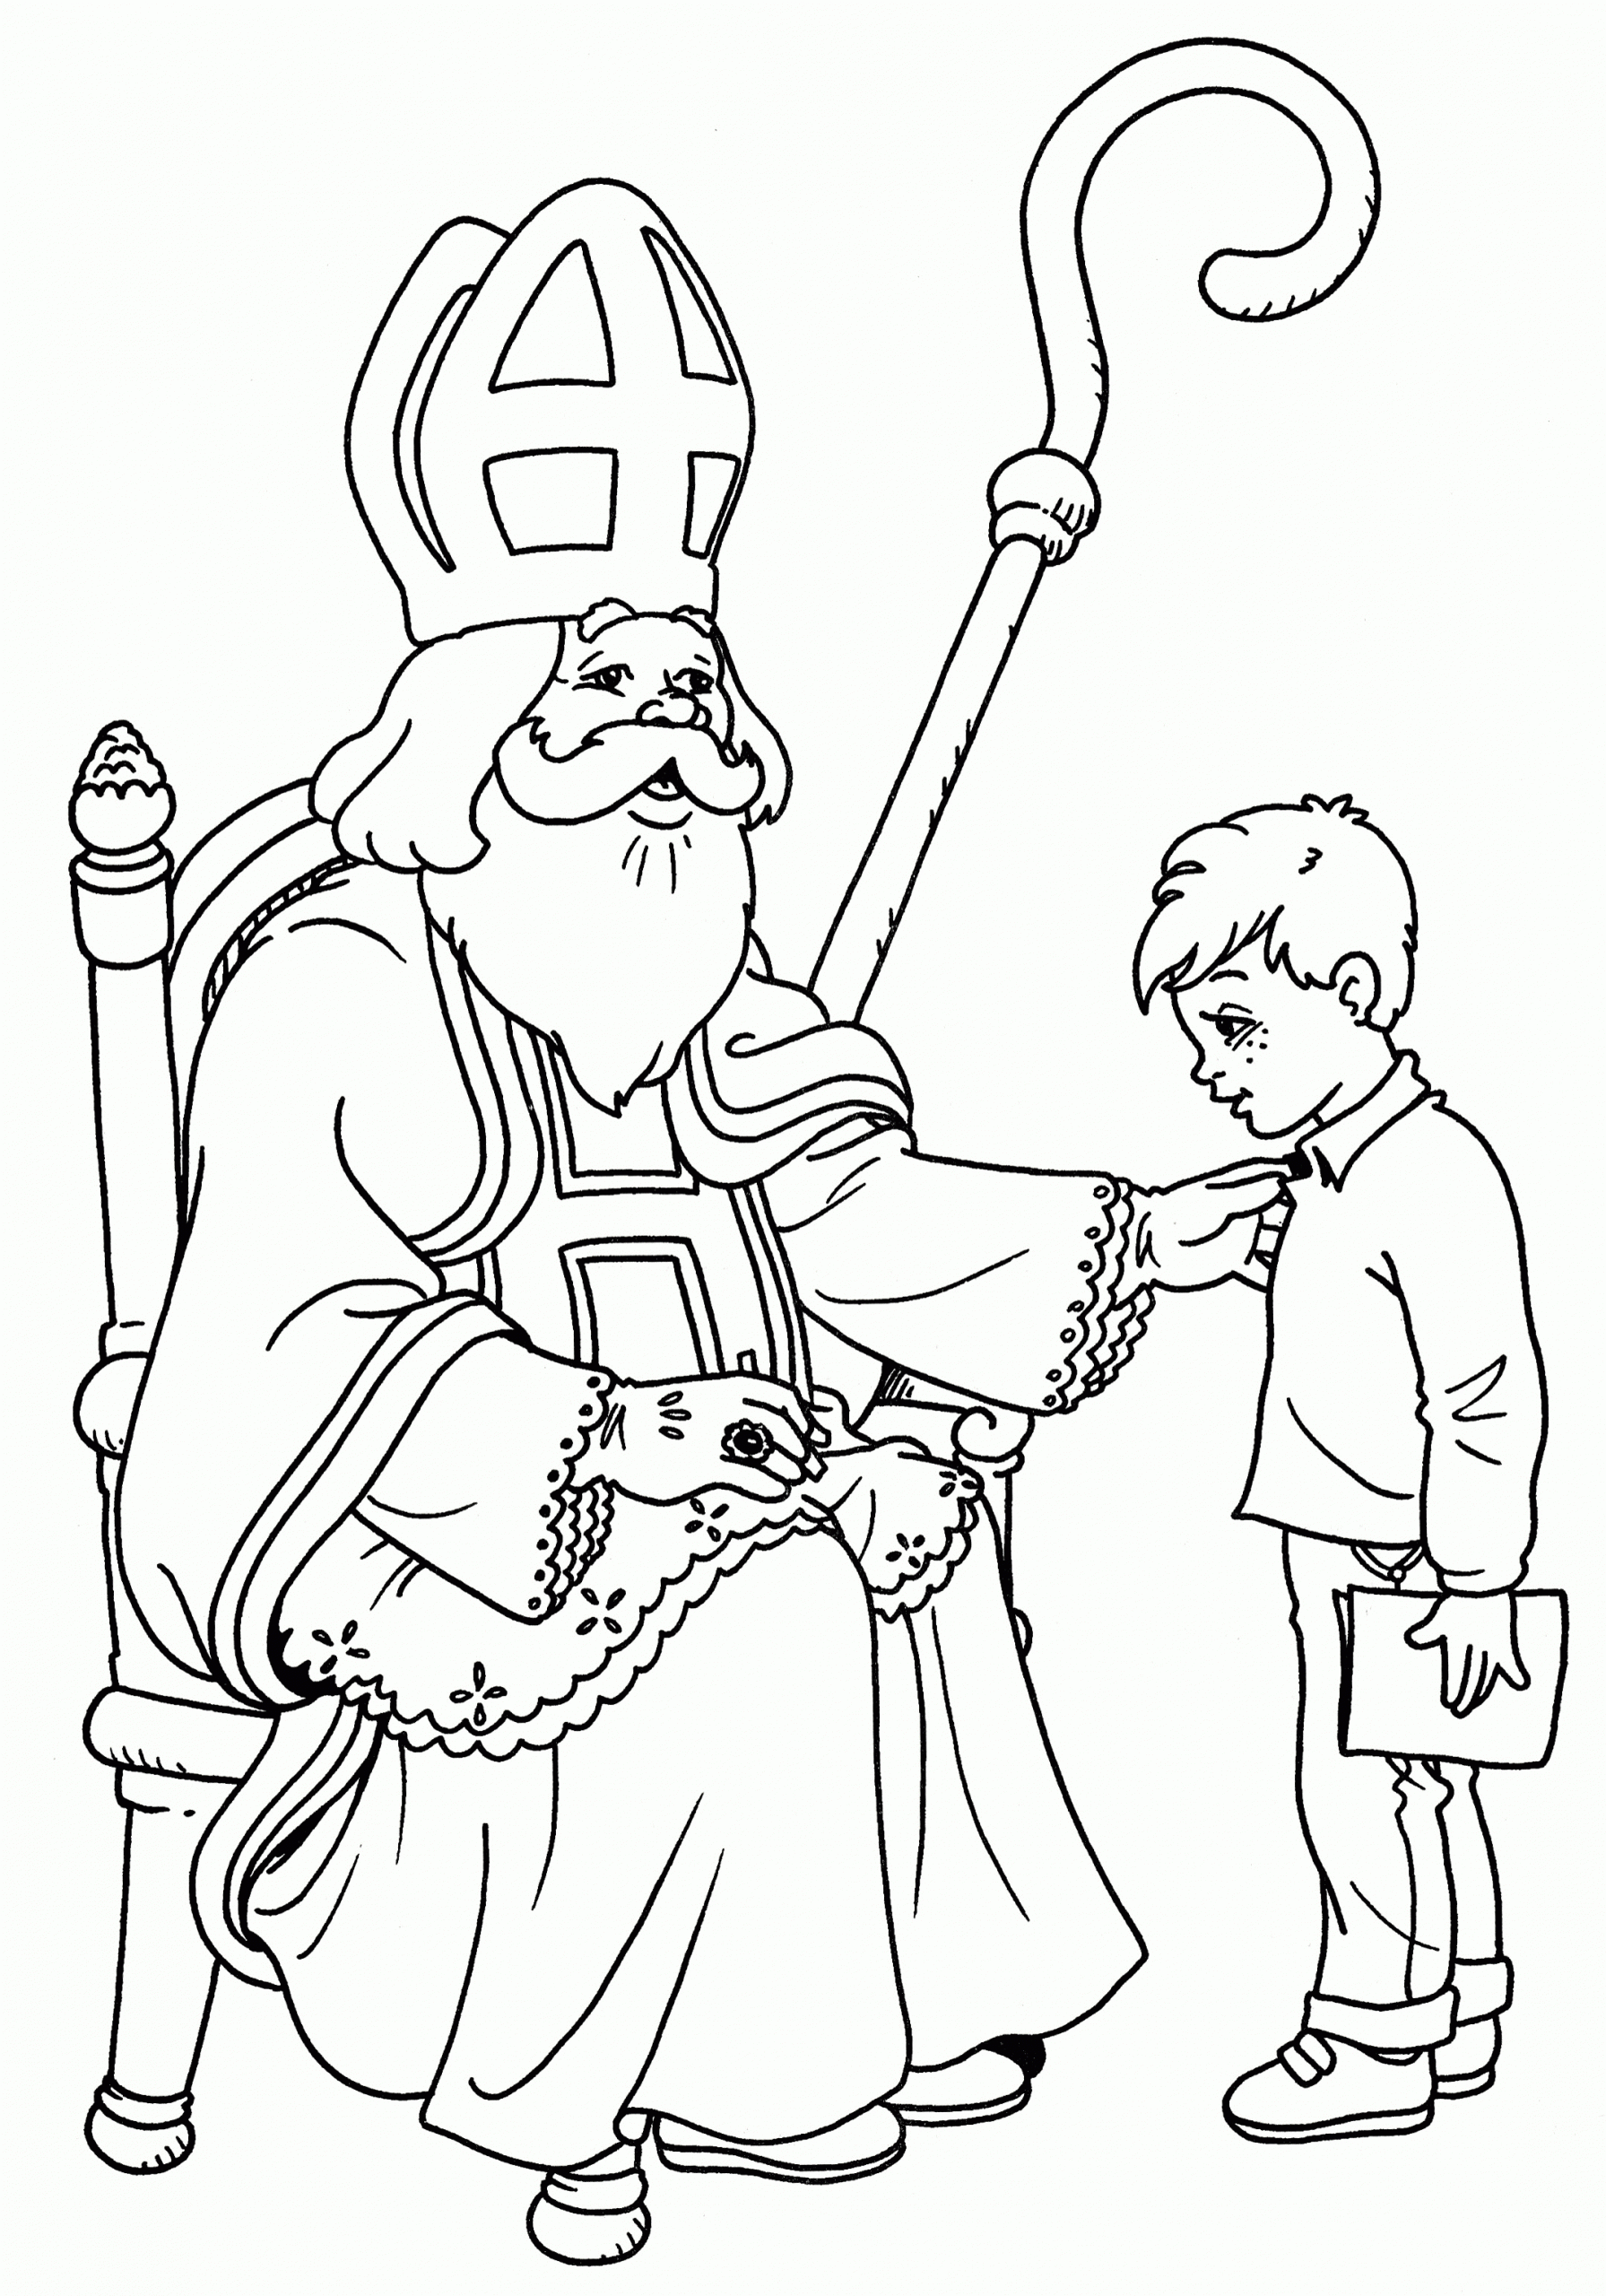 Malvorlage - Sankt Nikolaus Malvorlagen 55 verwandt mit Nikolaus Ausmalbilder